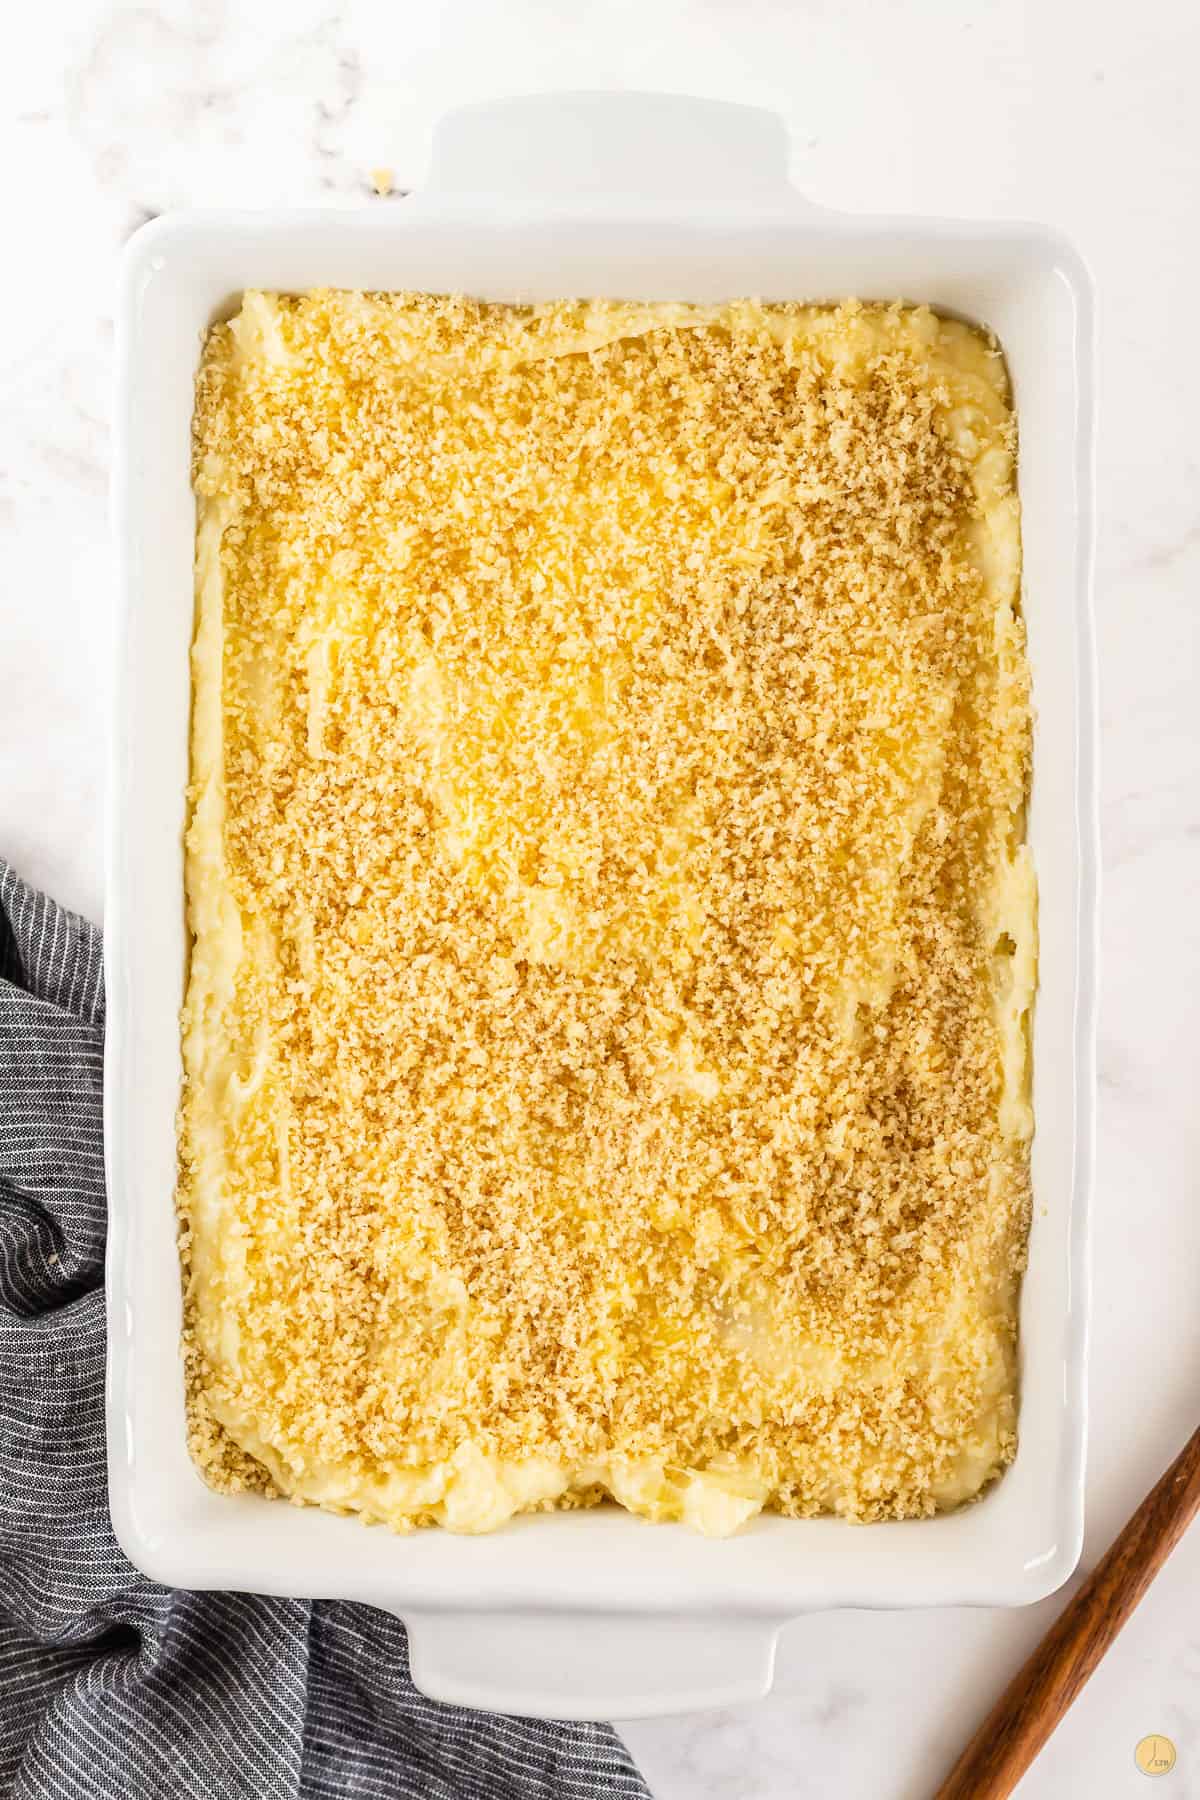 unbaked mashed potato gratin